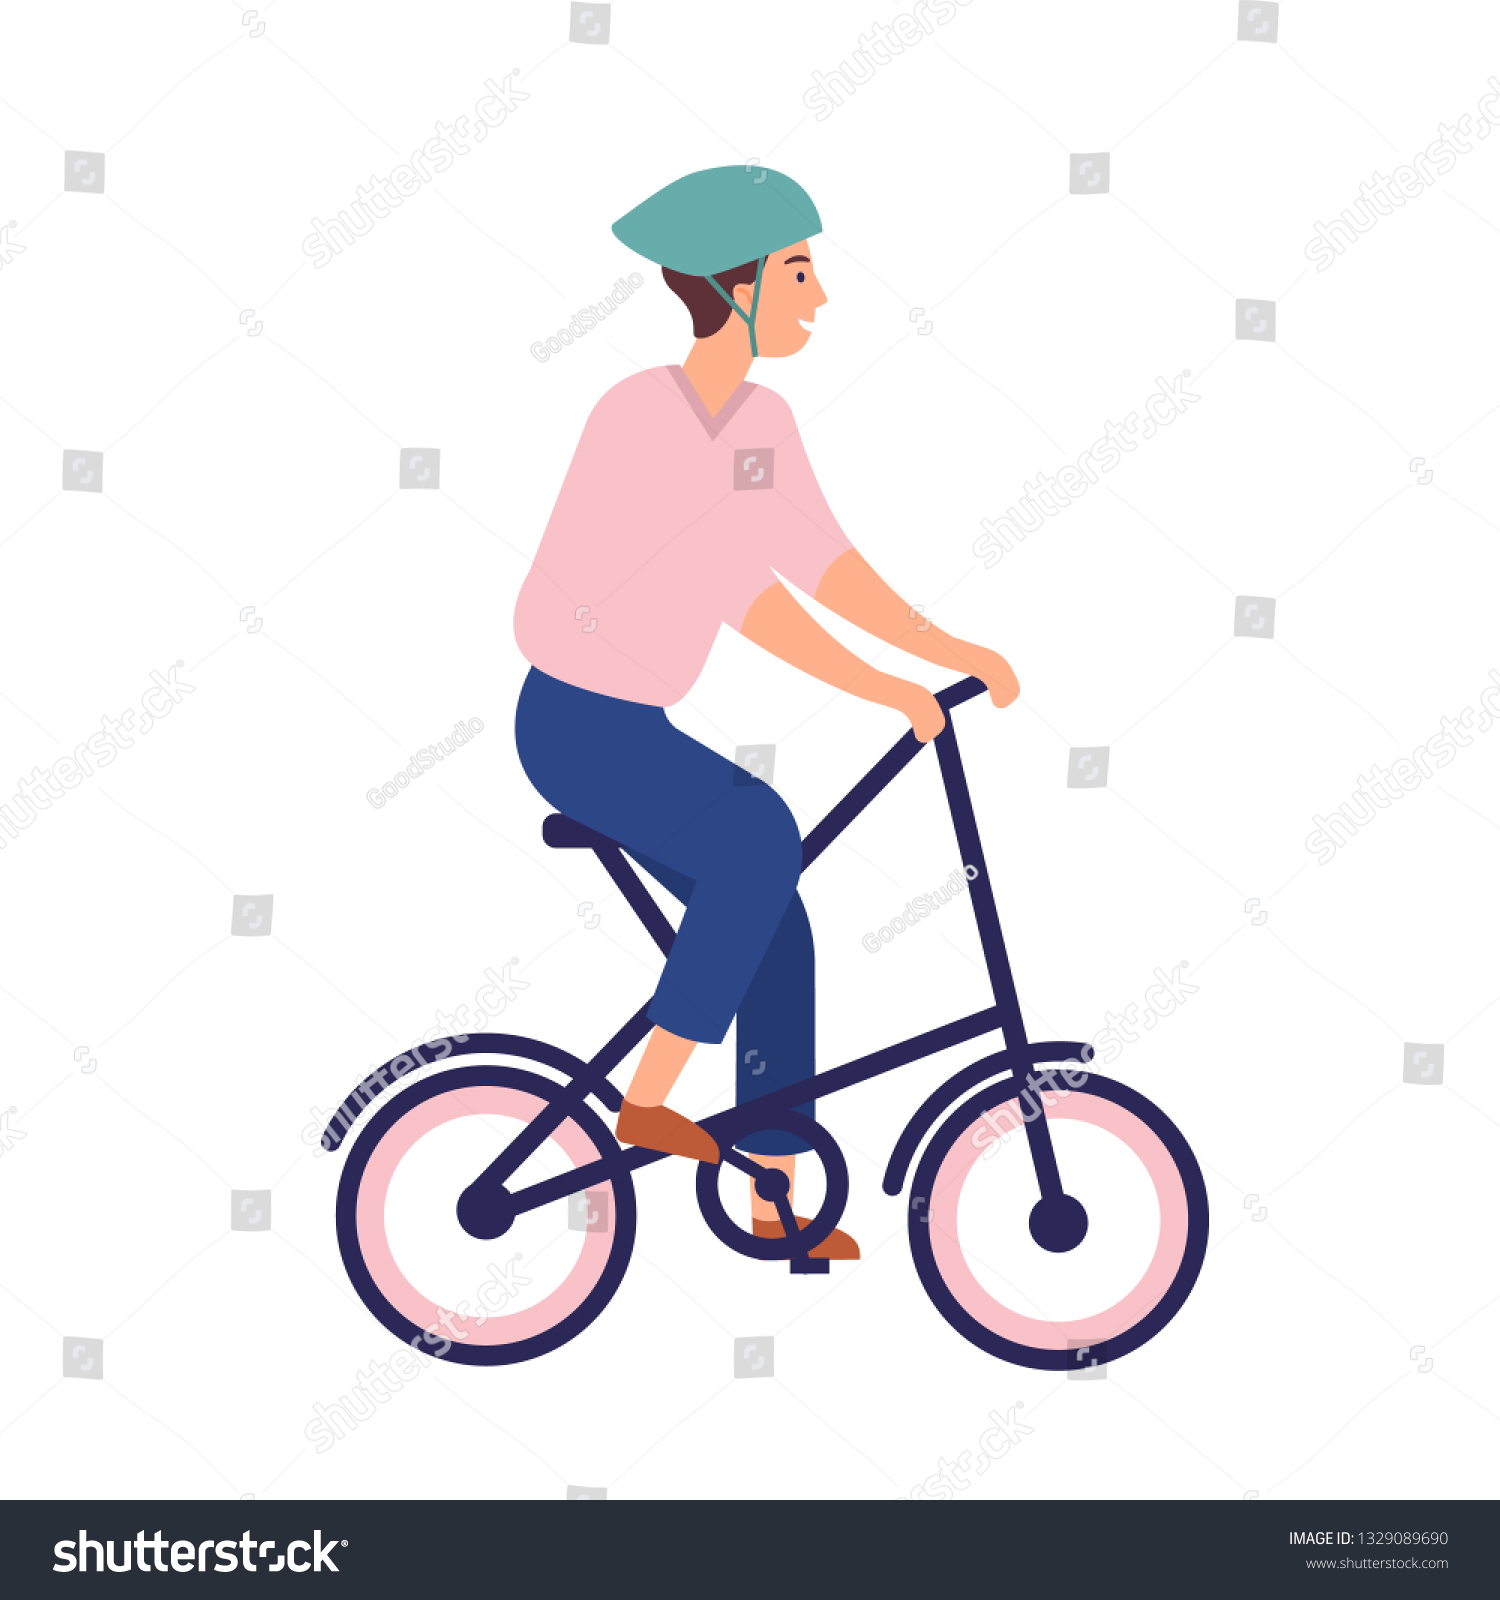 sportsman folding bike